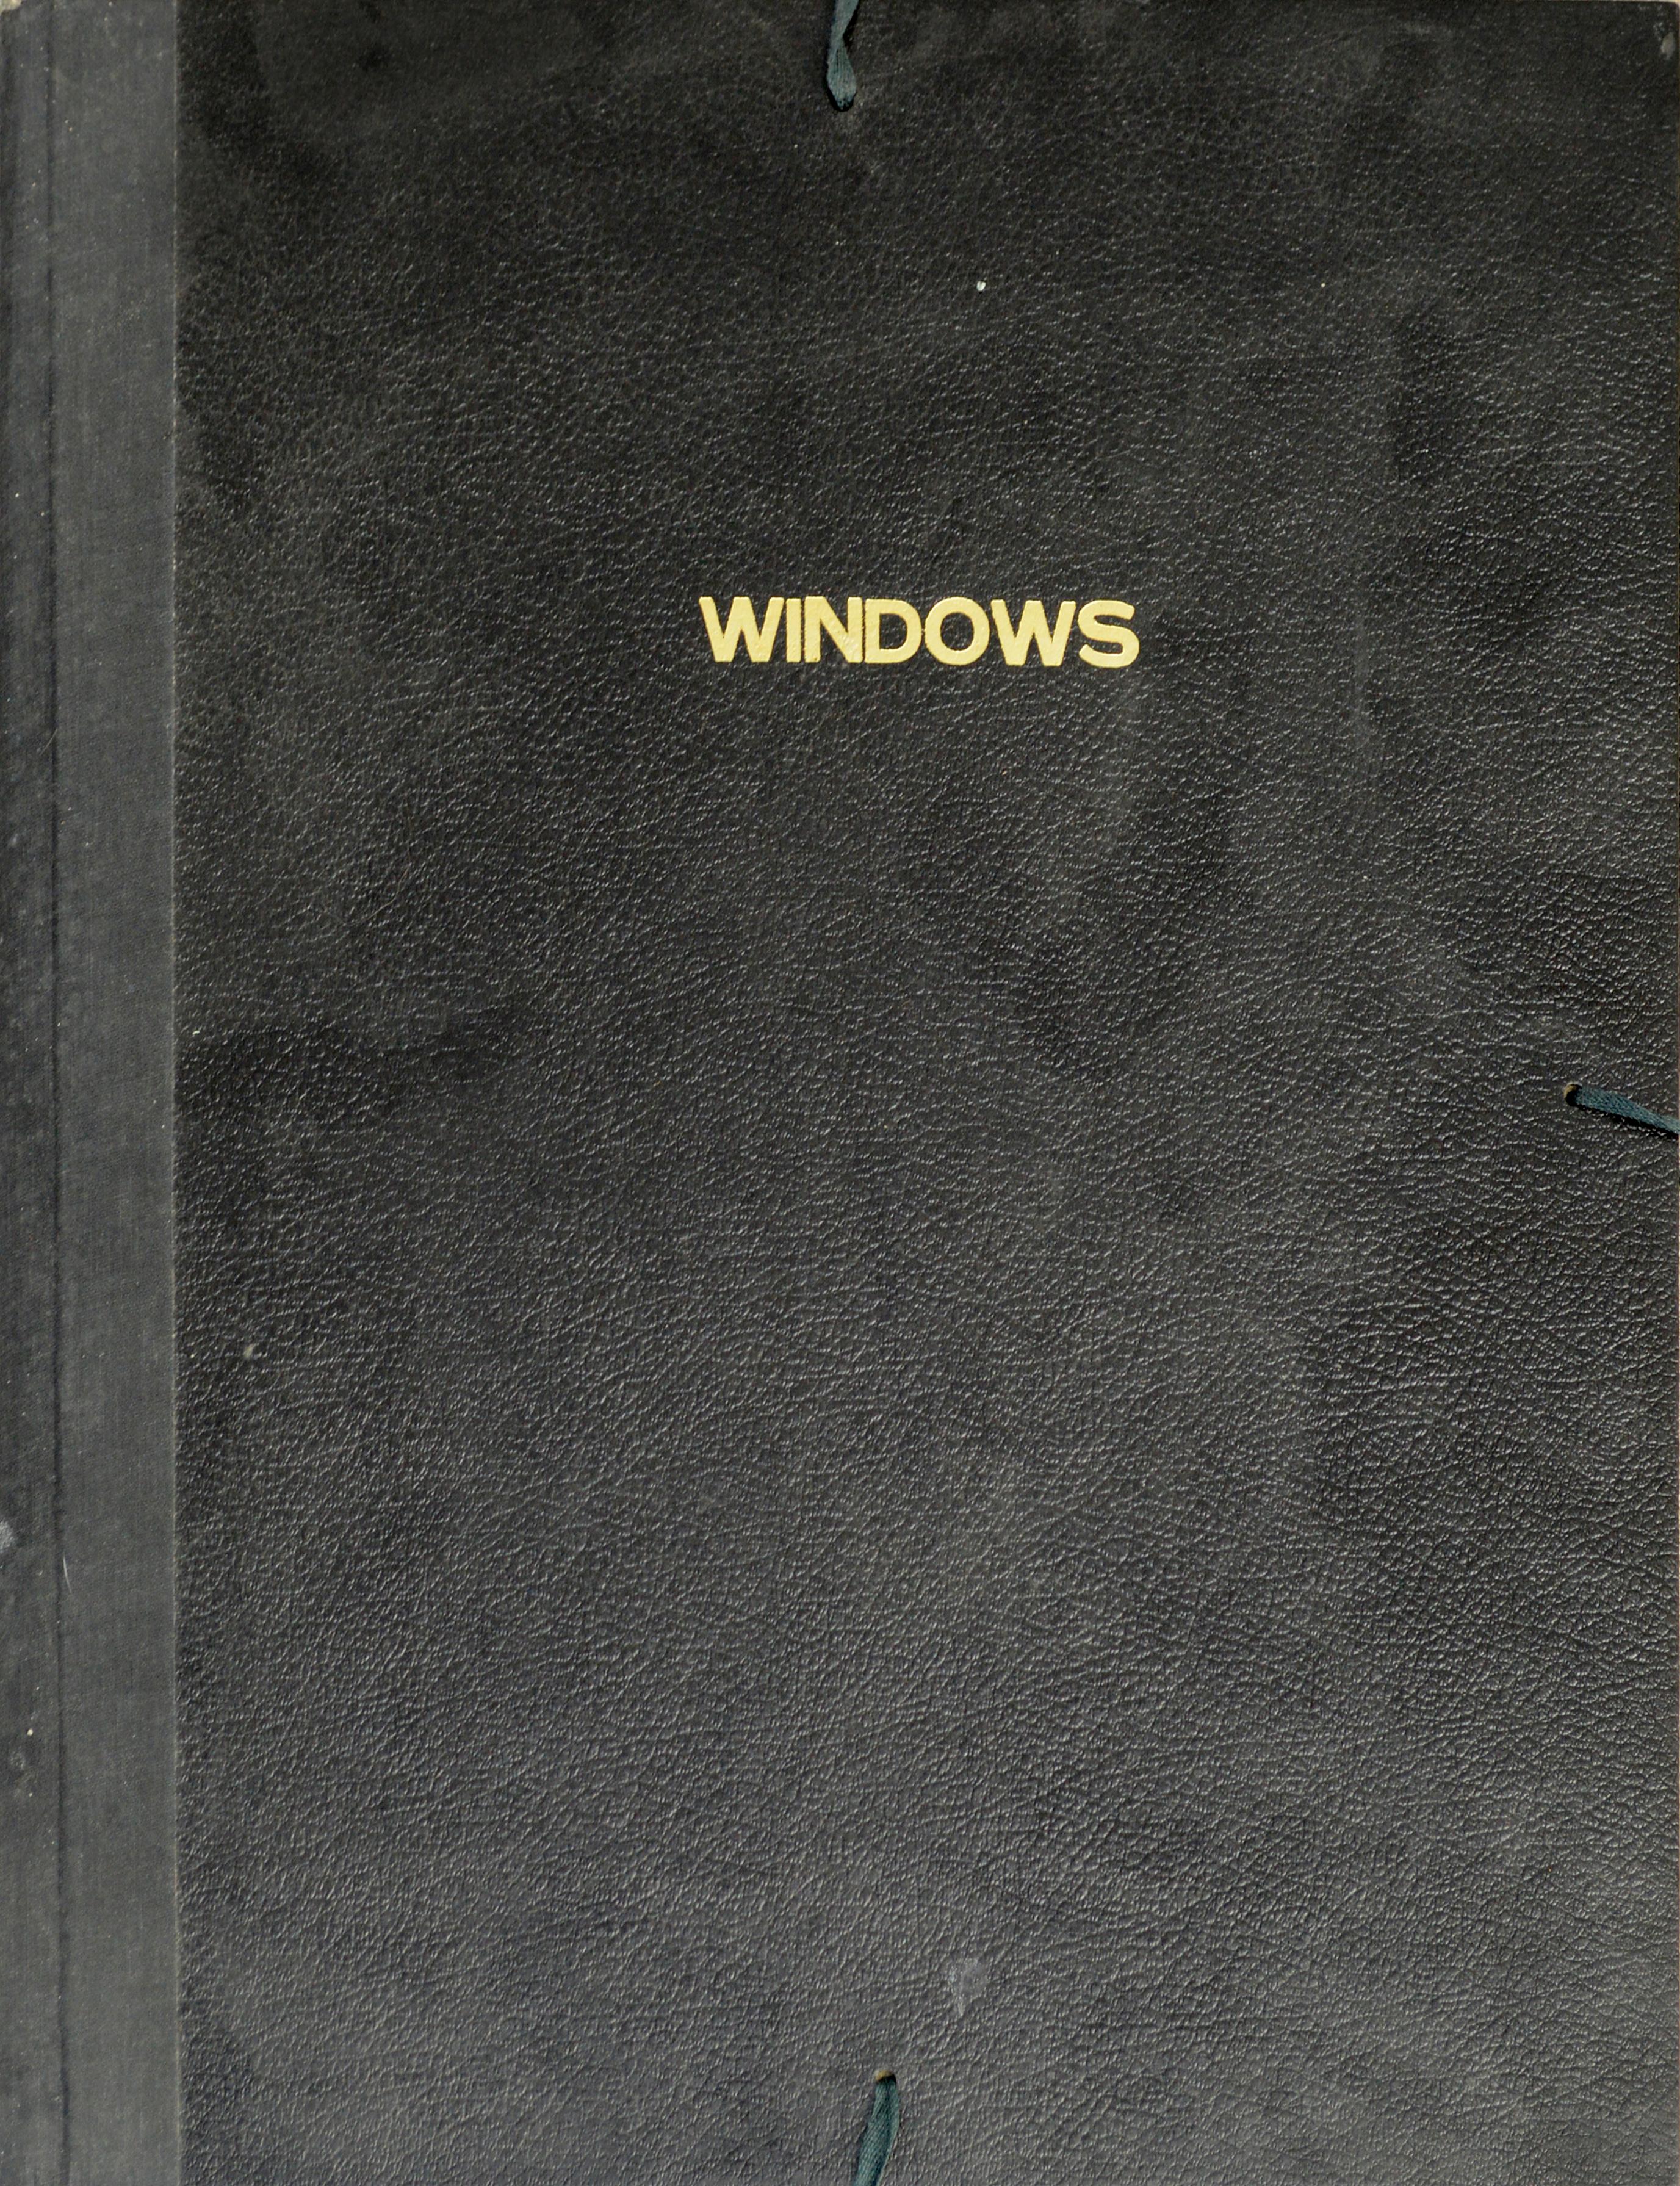 Windows - Eine Suite von Drucken von Patricia Pearce, et al (Zeitgenössisch), Print, von Patricia A Pearce